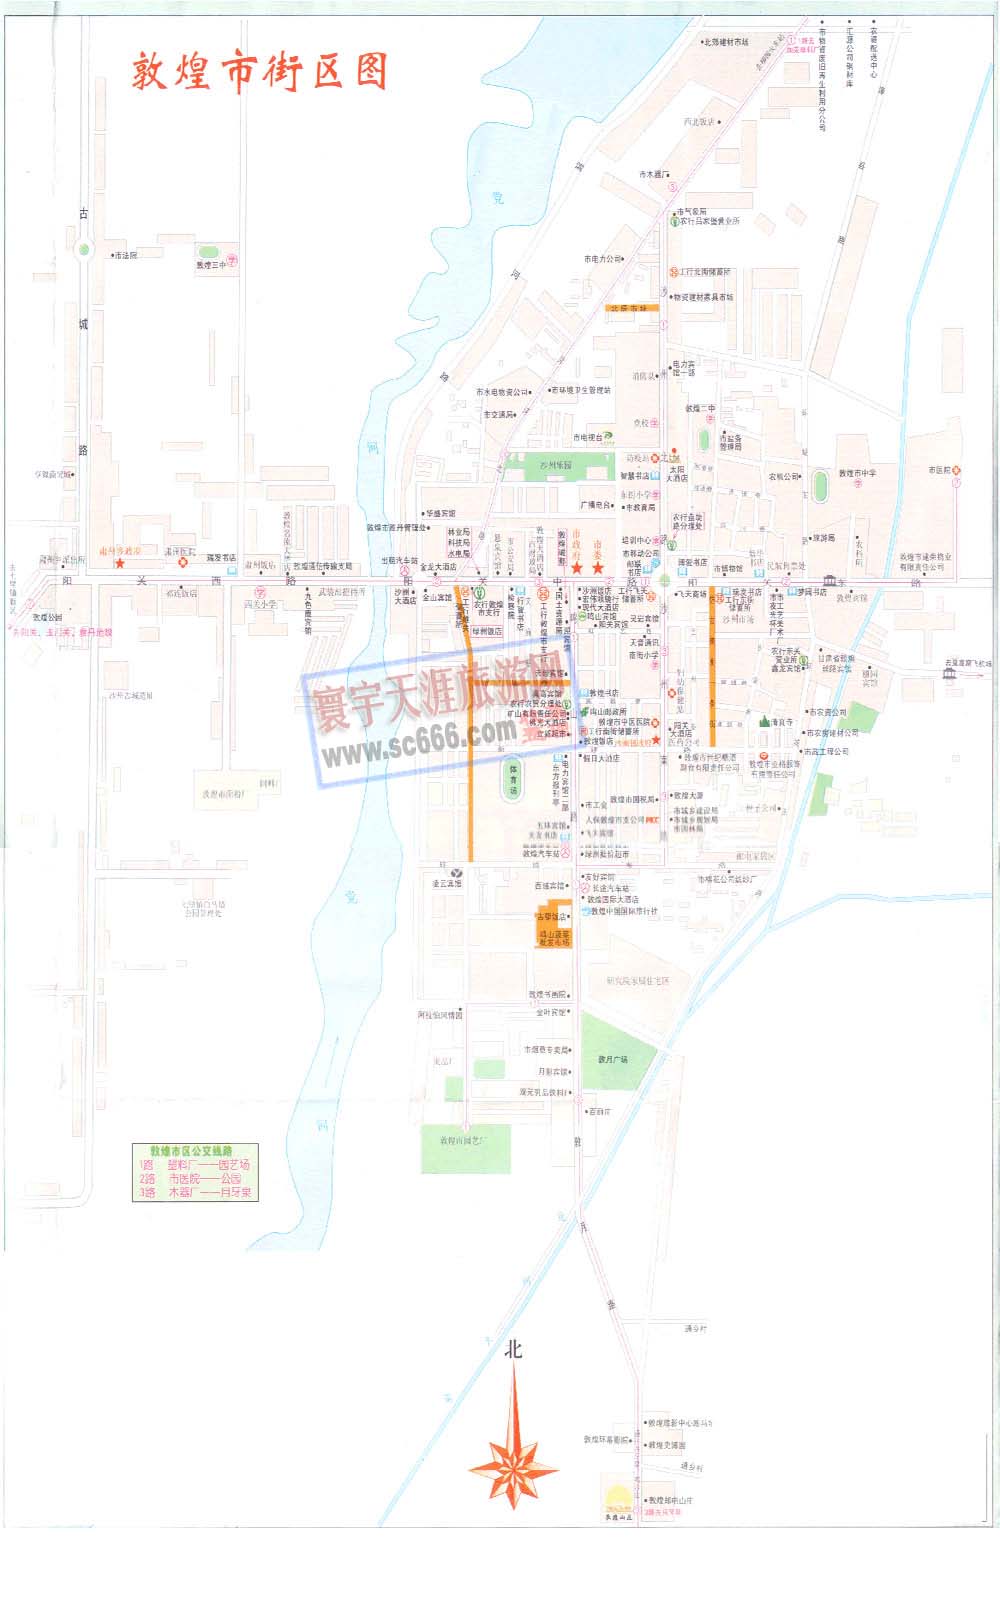 敦煌市街区图